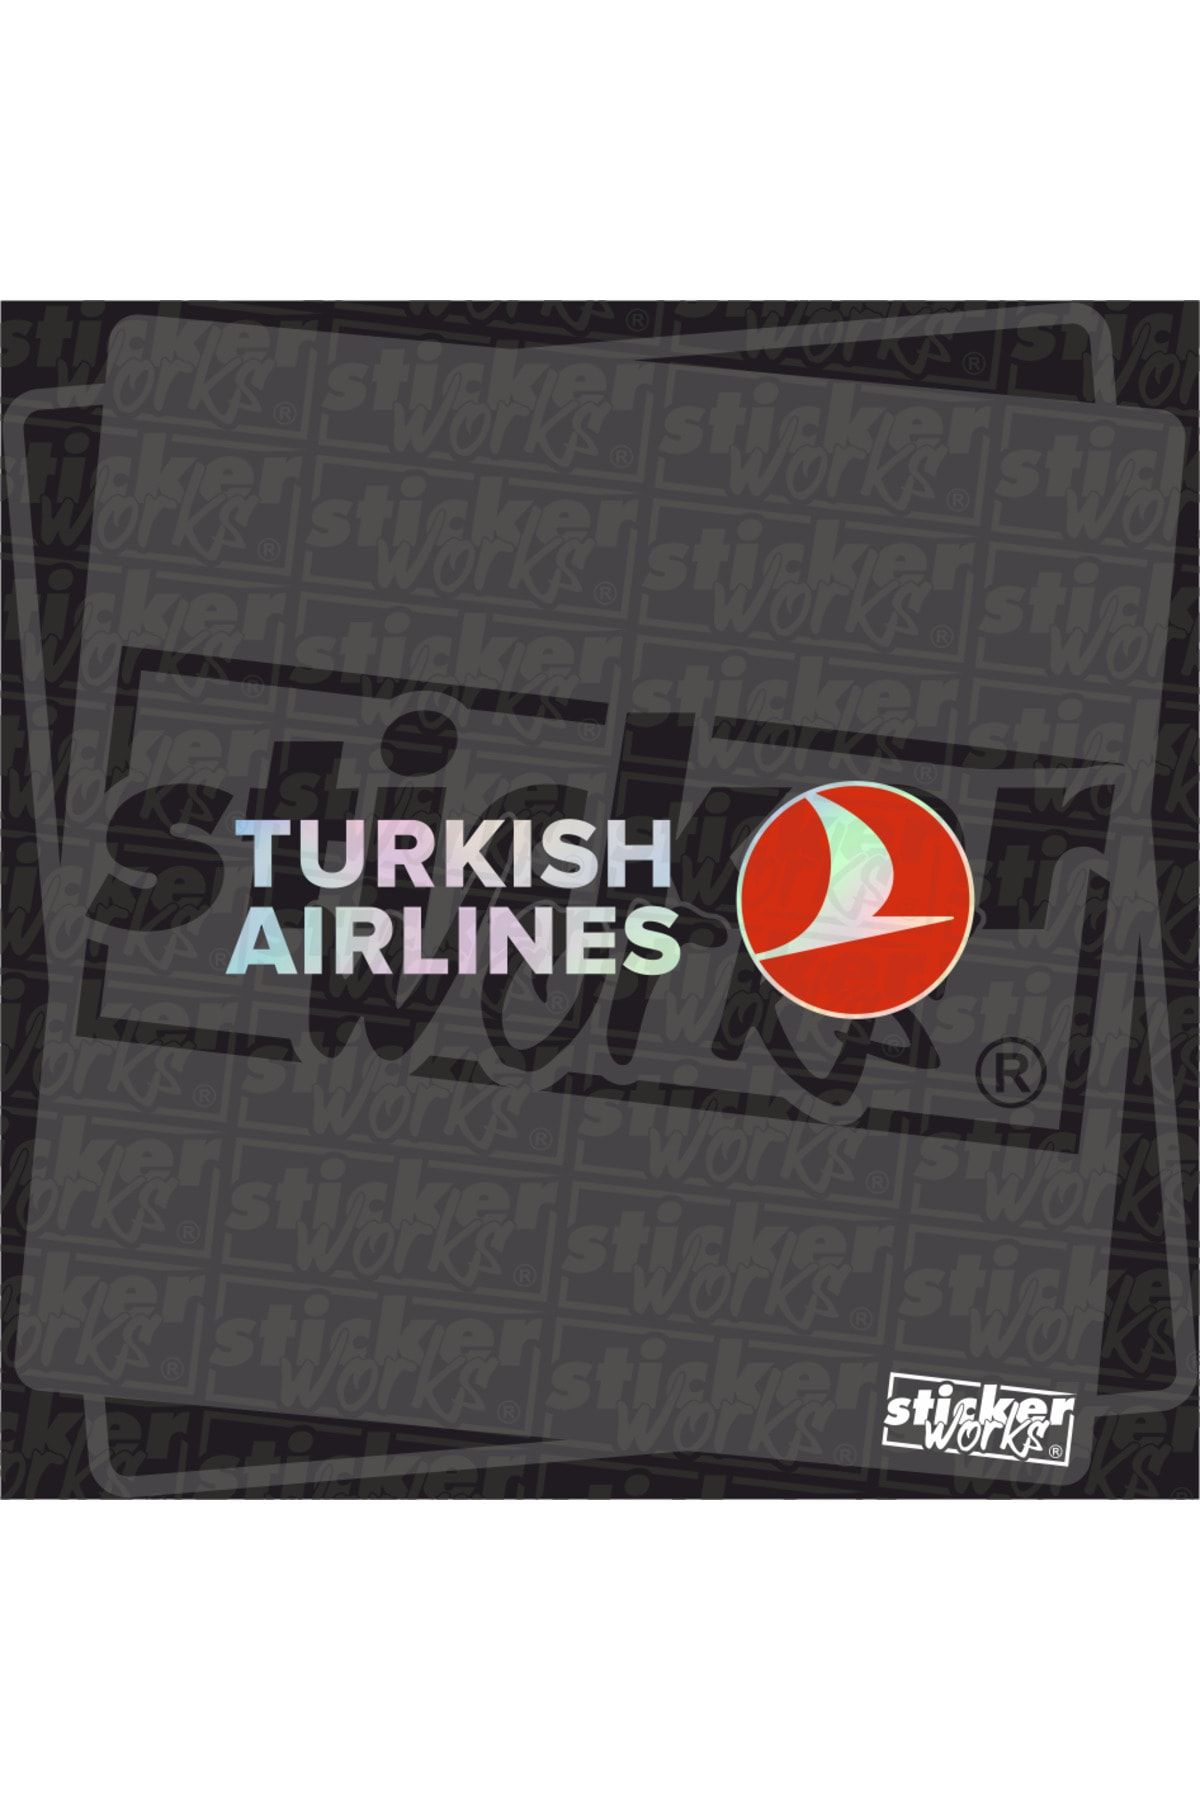 Sticker Works Turkish Airlines Hologram Sticker - Türk Hava Yolları Sticker